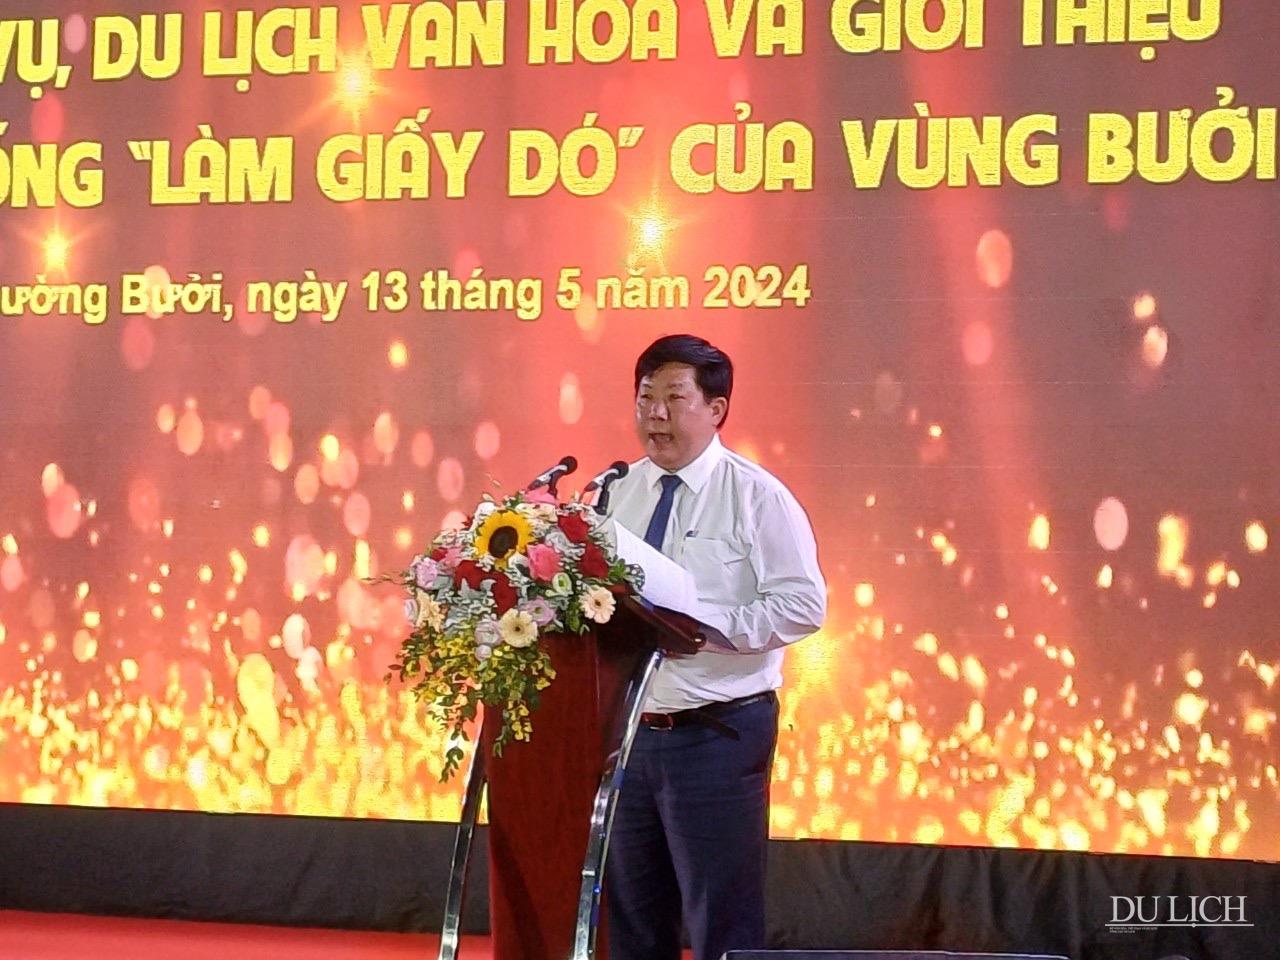 Phó Chủ tịch UBND quận Tây Hồ Nguyễn Thanh Vinh phát biểu